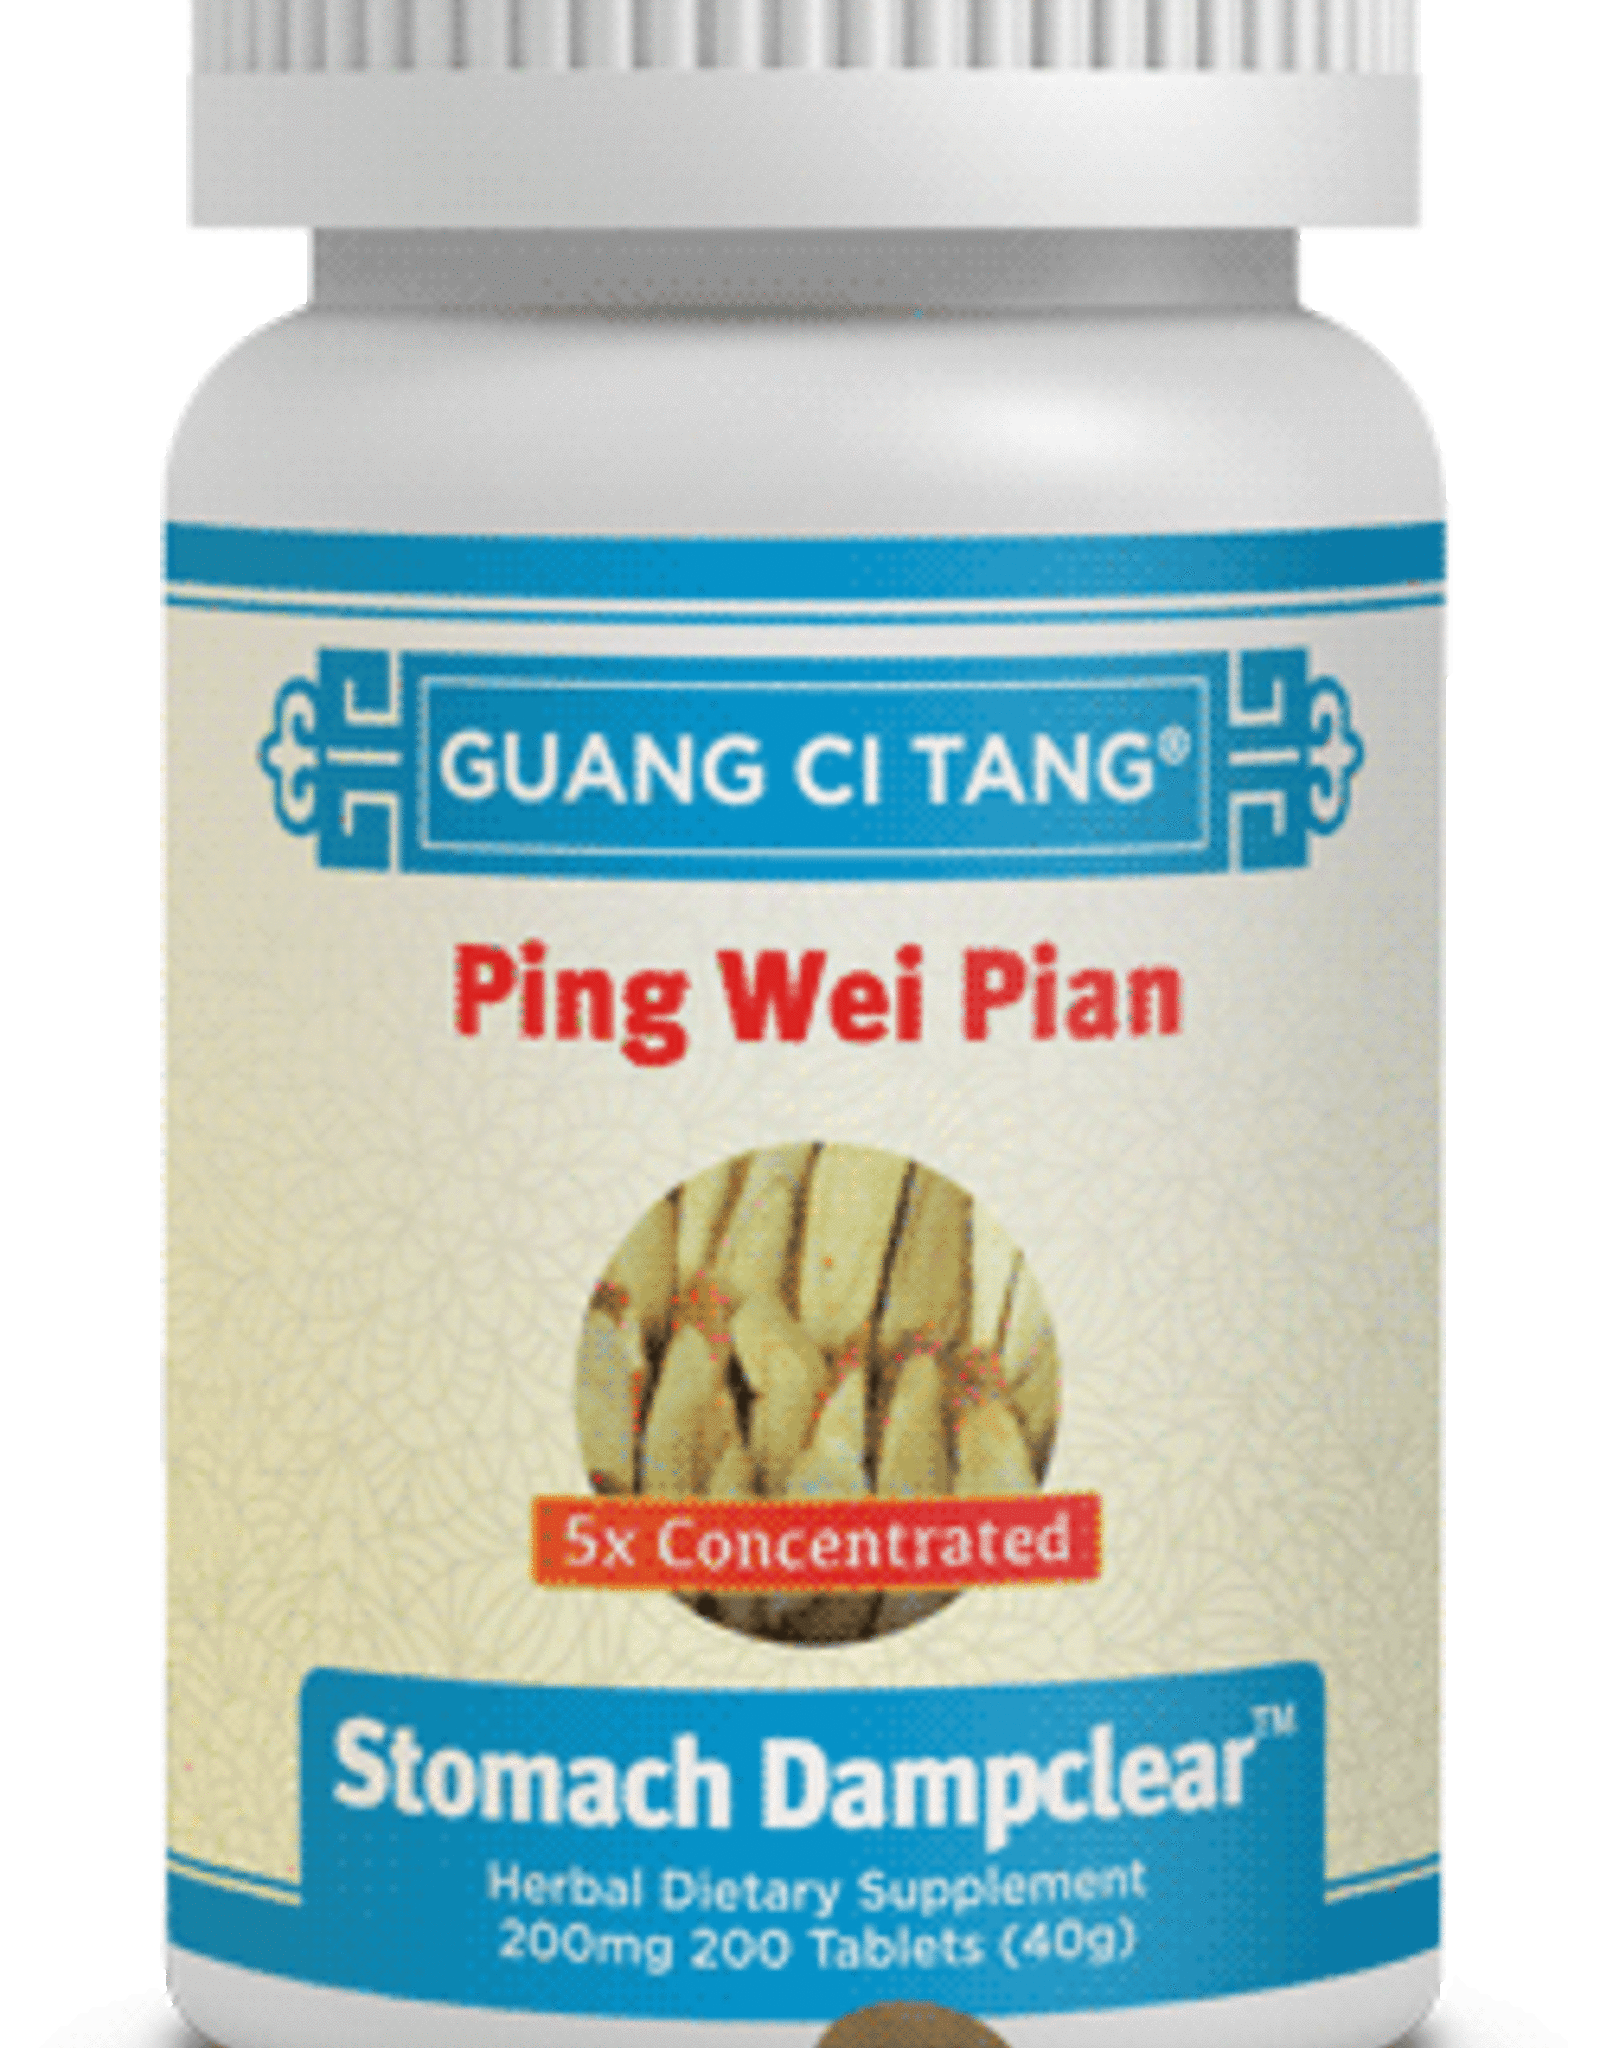 Guang Ci Tang Ping Wei Pian - Stomach DampClear